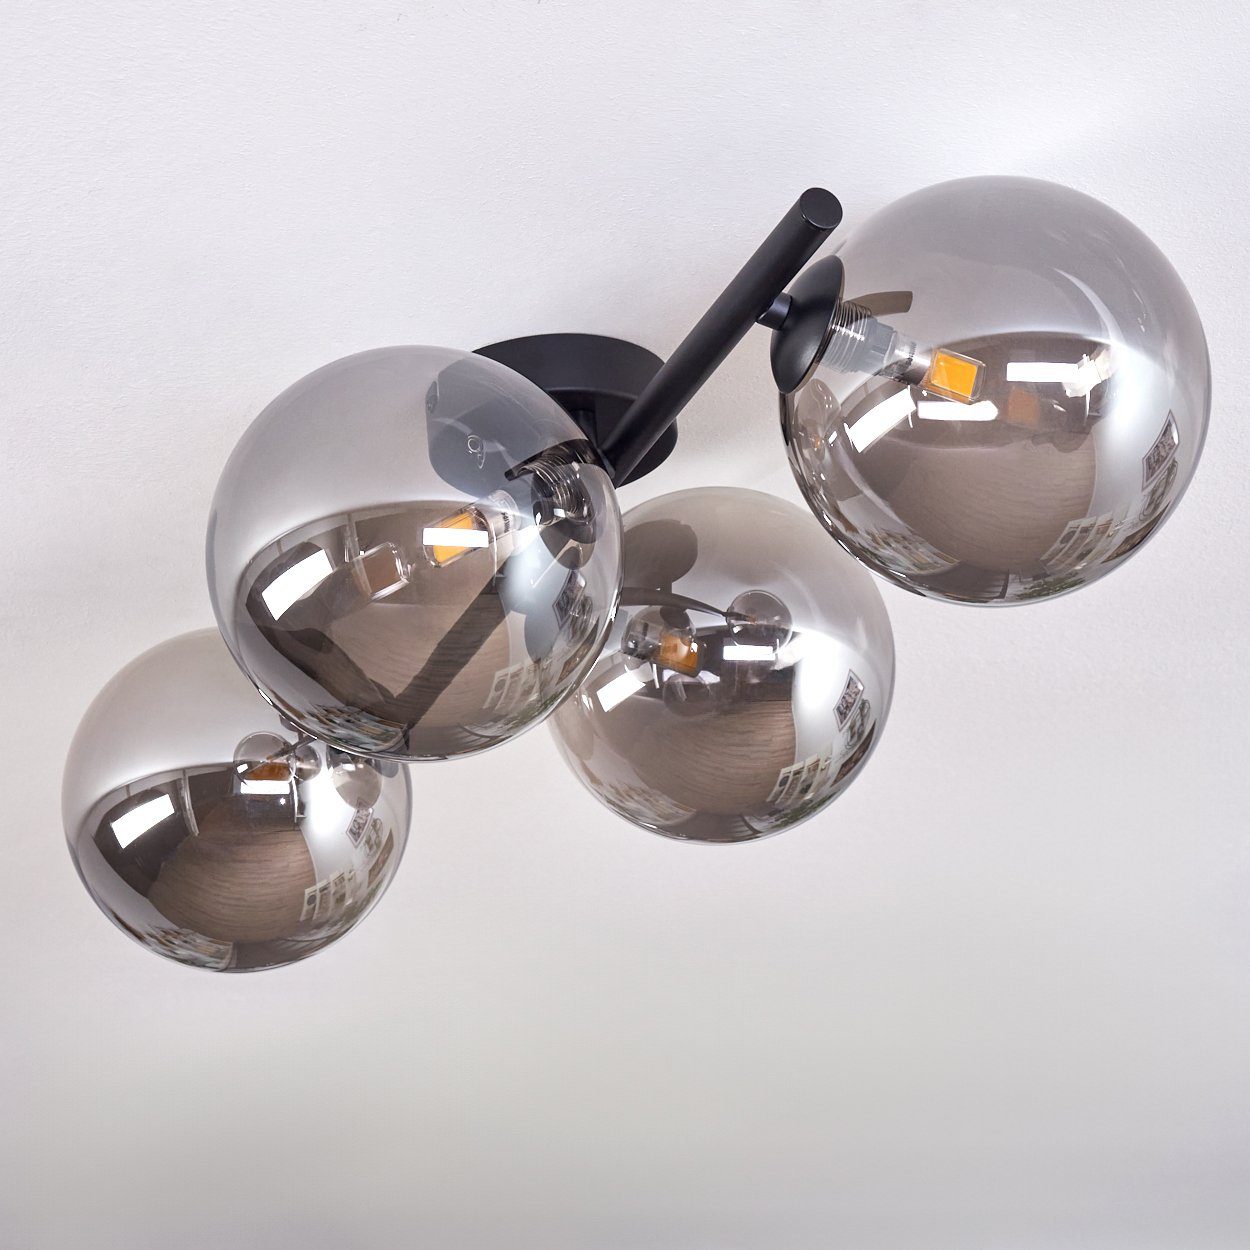 Leuchte Glas, hofstein ohne Leuchtmittel Deckenleuchte x in 4 im Deckenlampe Leuchtmittel, aus LED, G9 Metall/Glas Schwarz/Rauchfarben, aus ohne Retro-Design